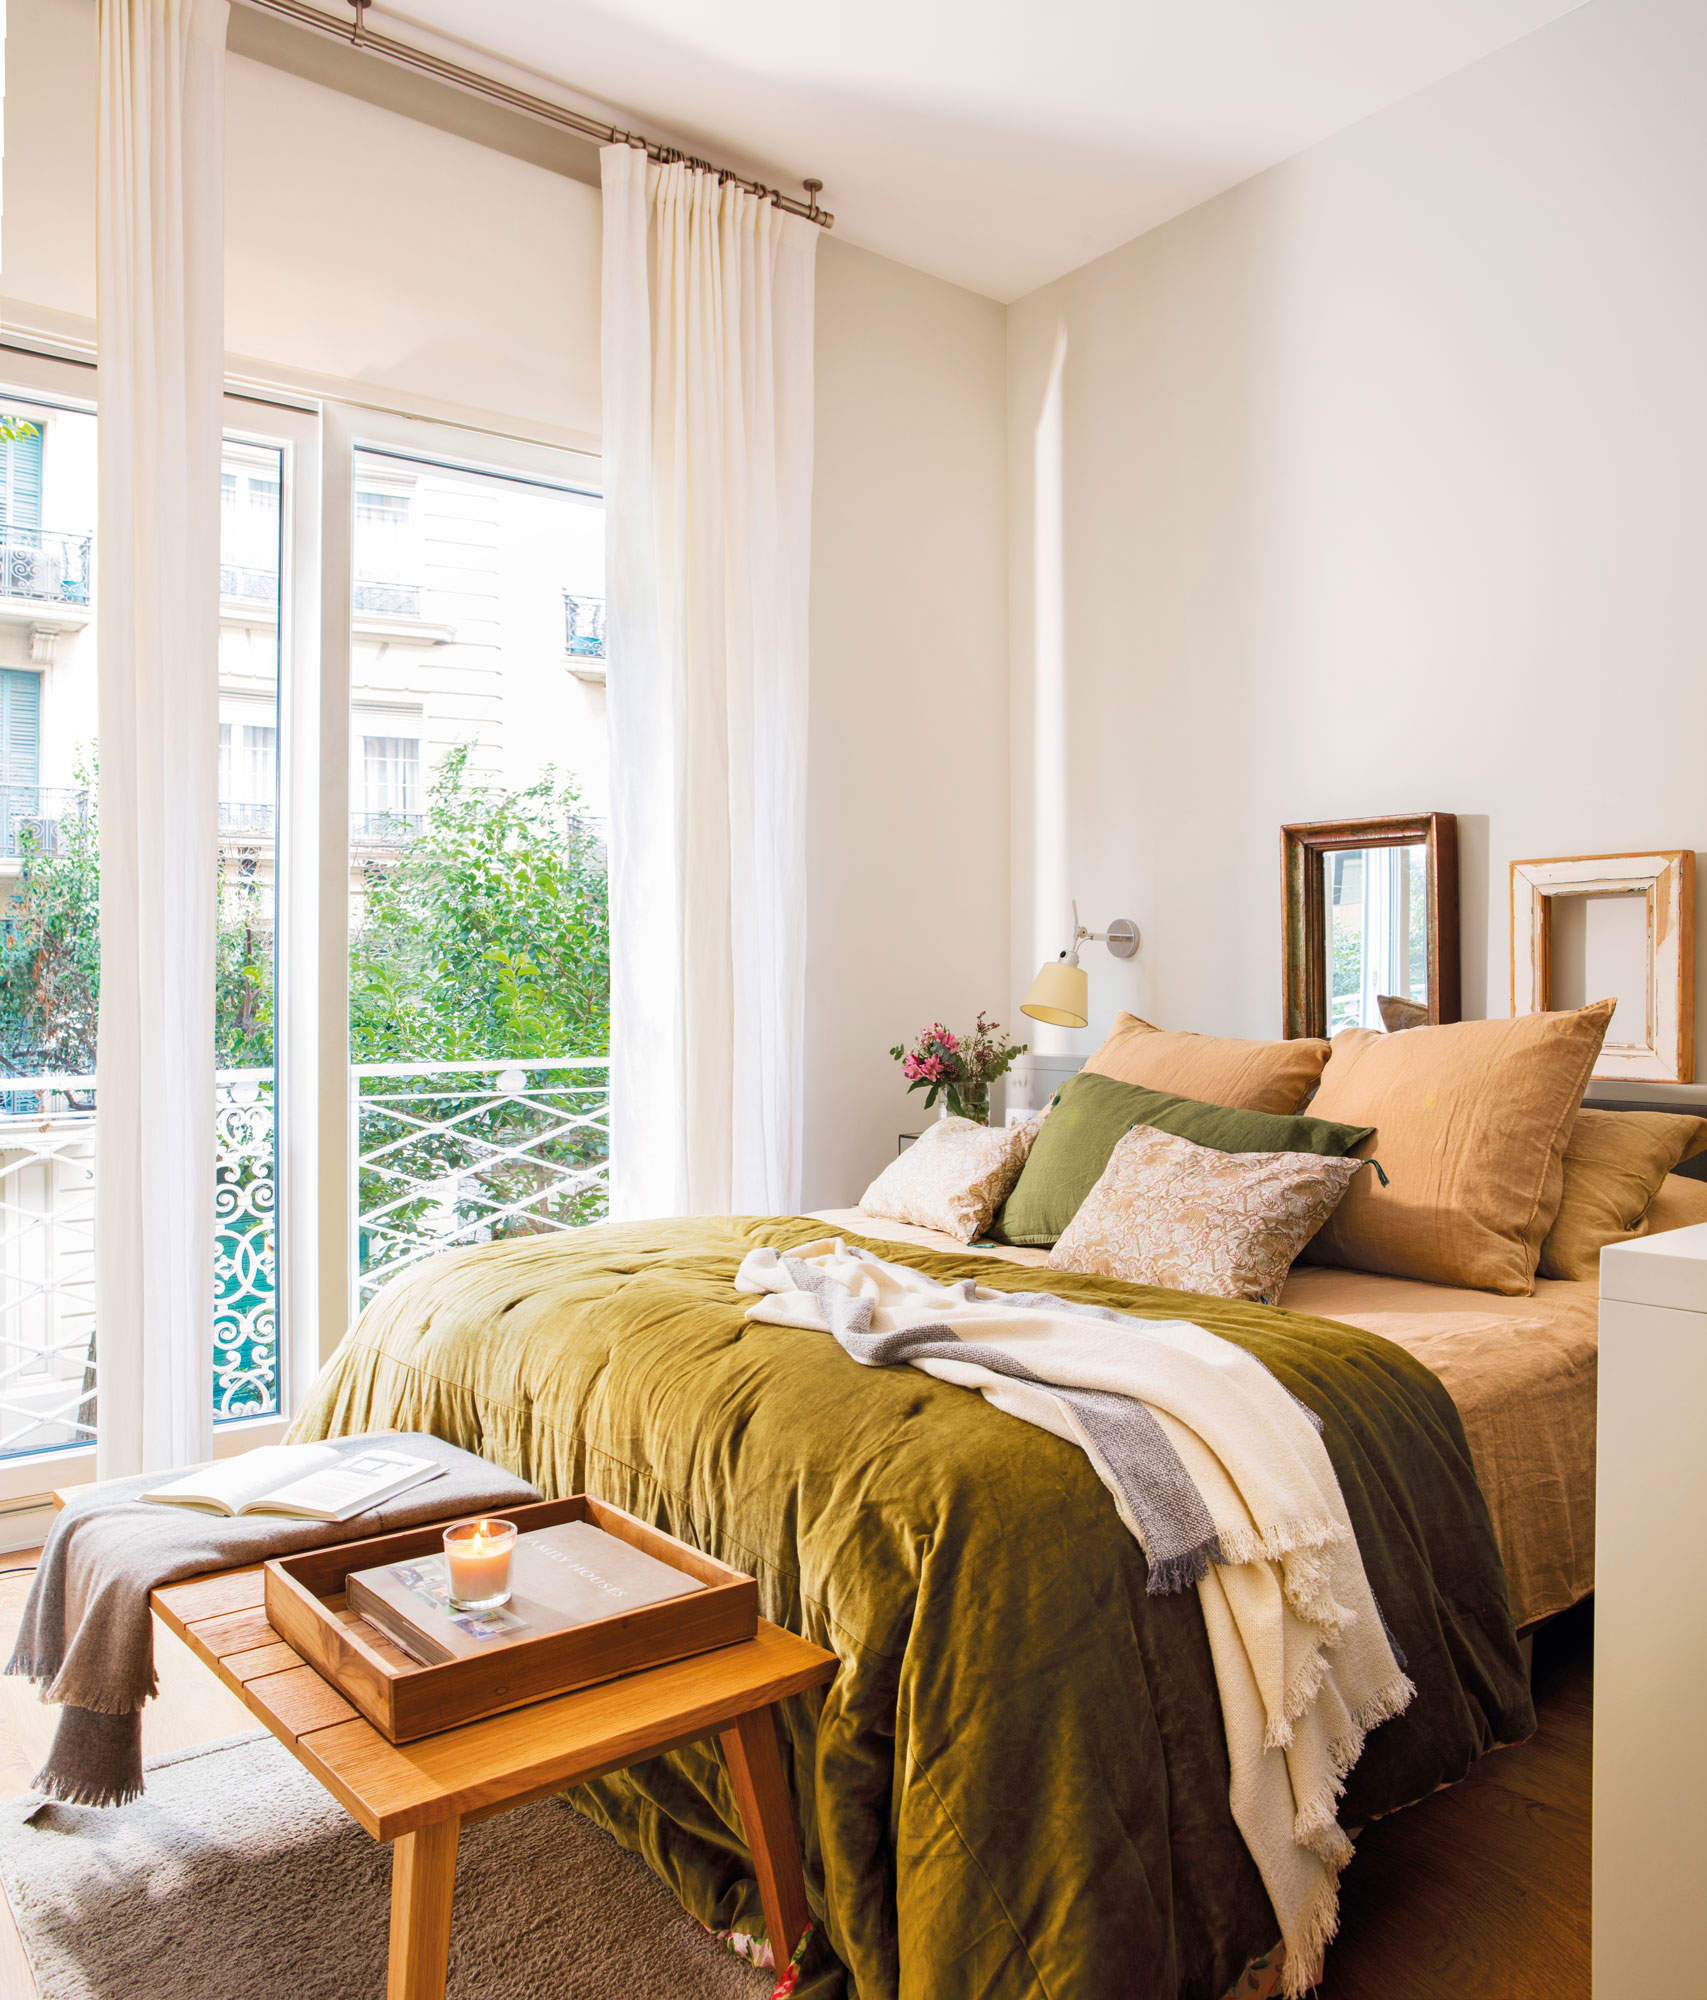 Dormitorio en tonos verdes y mostazas, con gran edredón, plaid y mantita sobre un banquito.